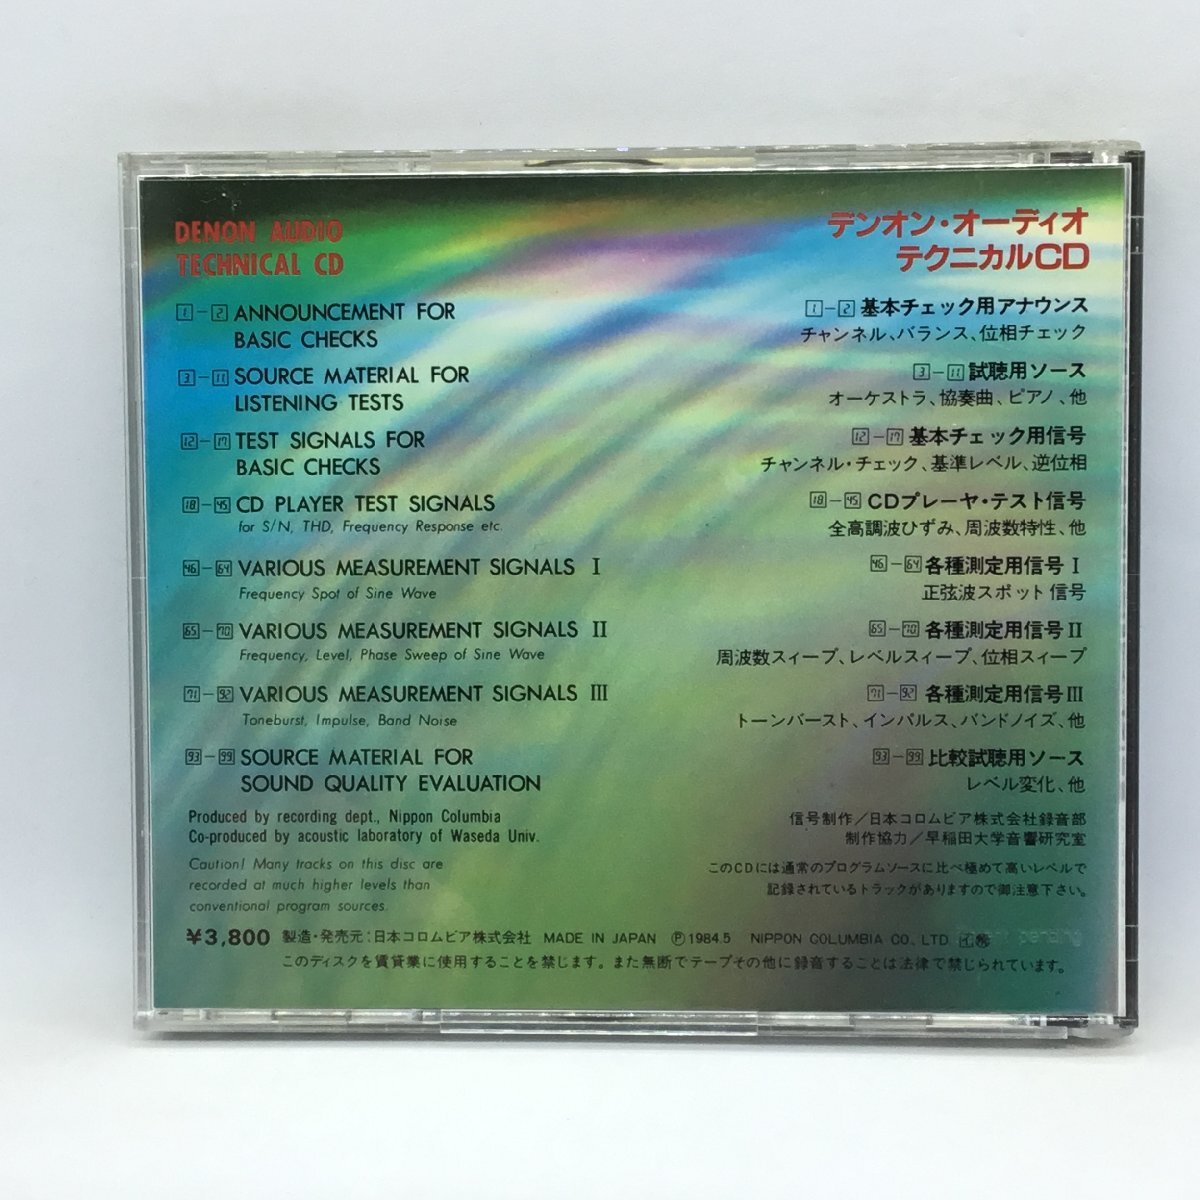 オリジナルケース◇デンオン・オーディオ・テクニカルCD (CD) 38C39-7147の画像2